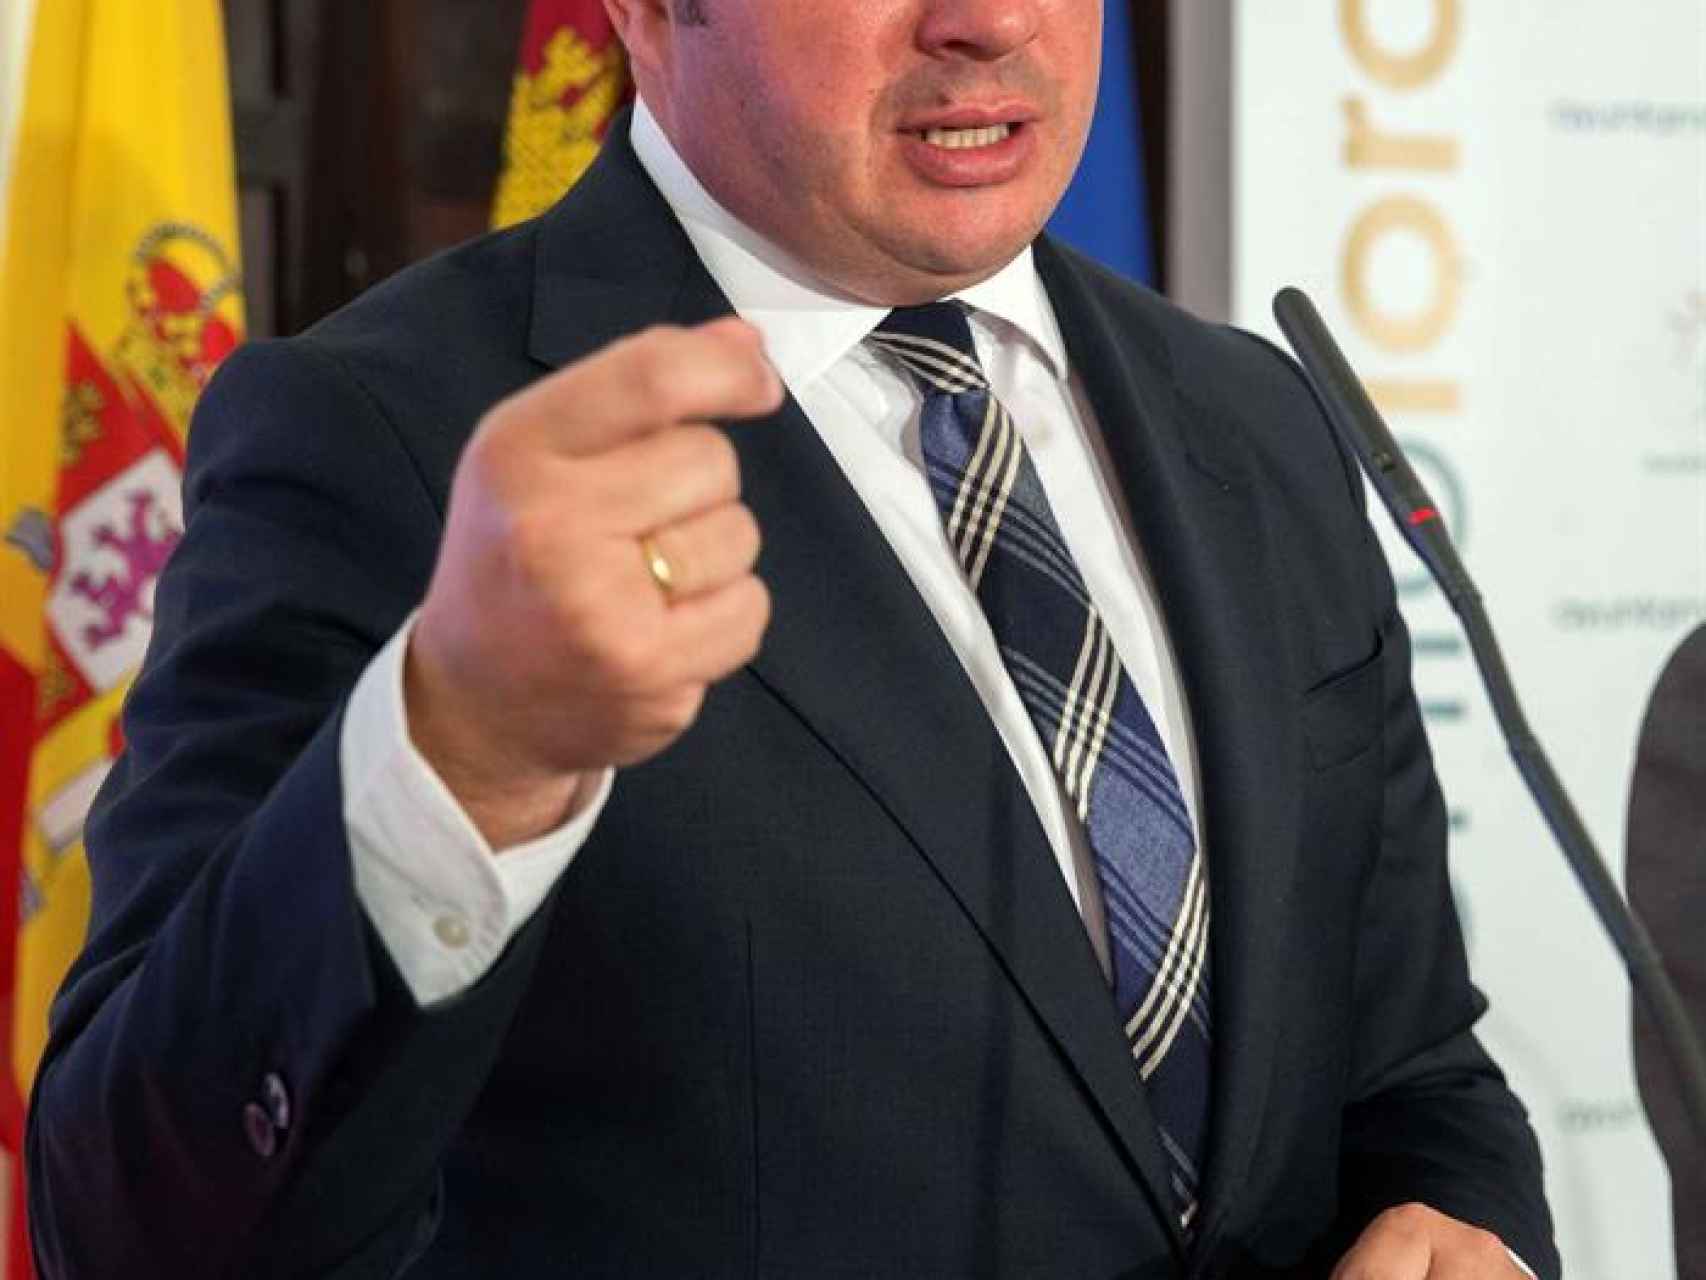 El presidente del Gobierno de Murcia, Pedro Antonio Sánchez.